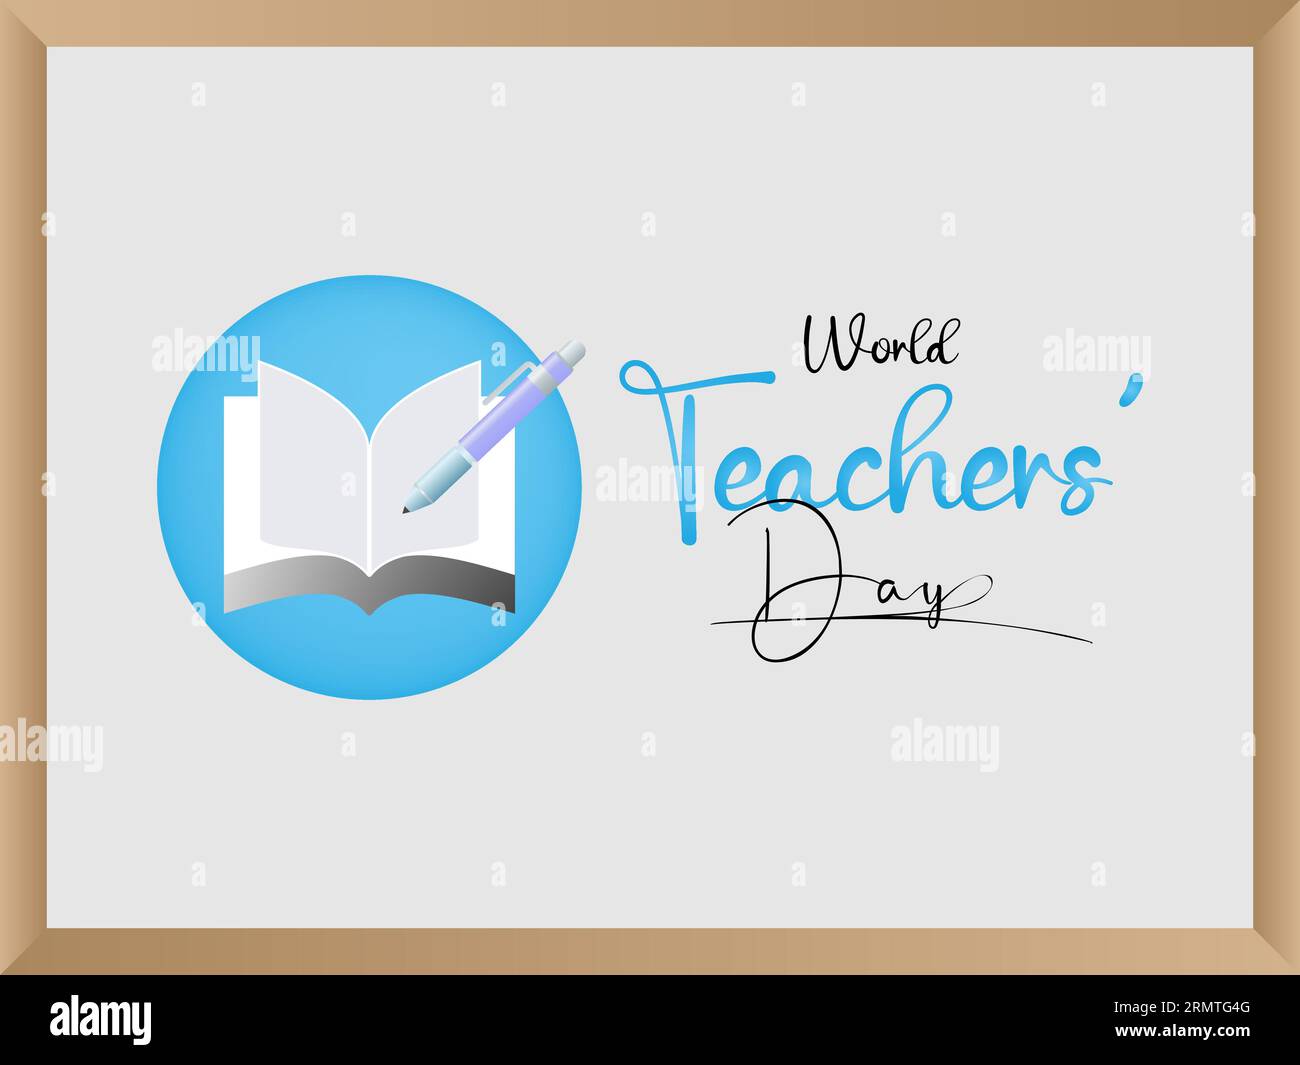 La Journée mondiale des enseignants reconnaît le dévouement, l'innovation et l'influence transformatrice des enseignants du monde entier. Modèle d'illustration vectorielle. Illustration de Vecteur